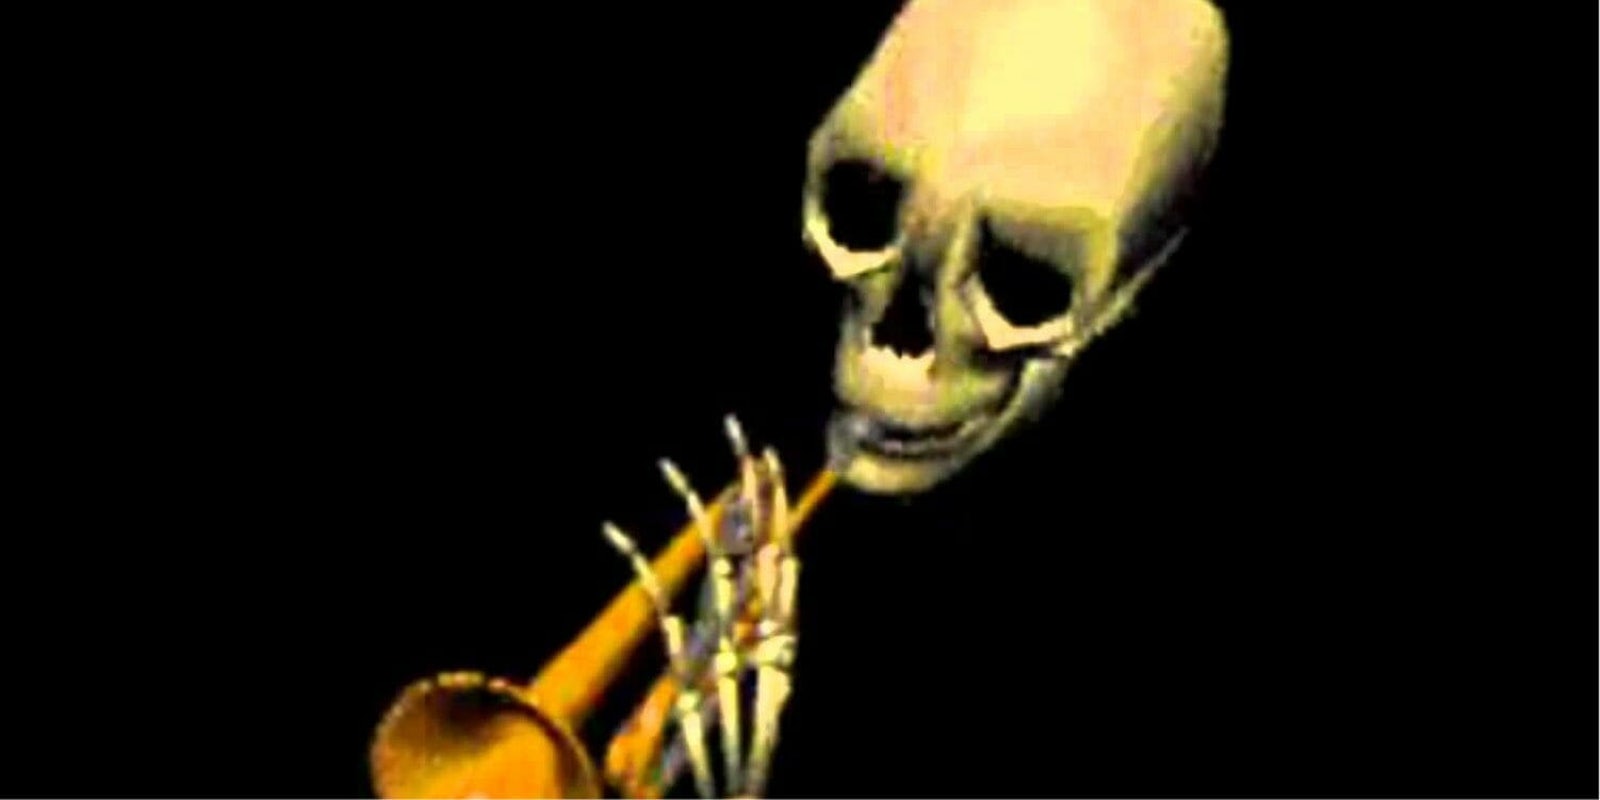 mr skeltal doot doot spooky skeleton meme